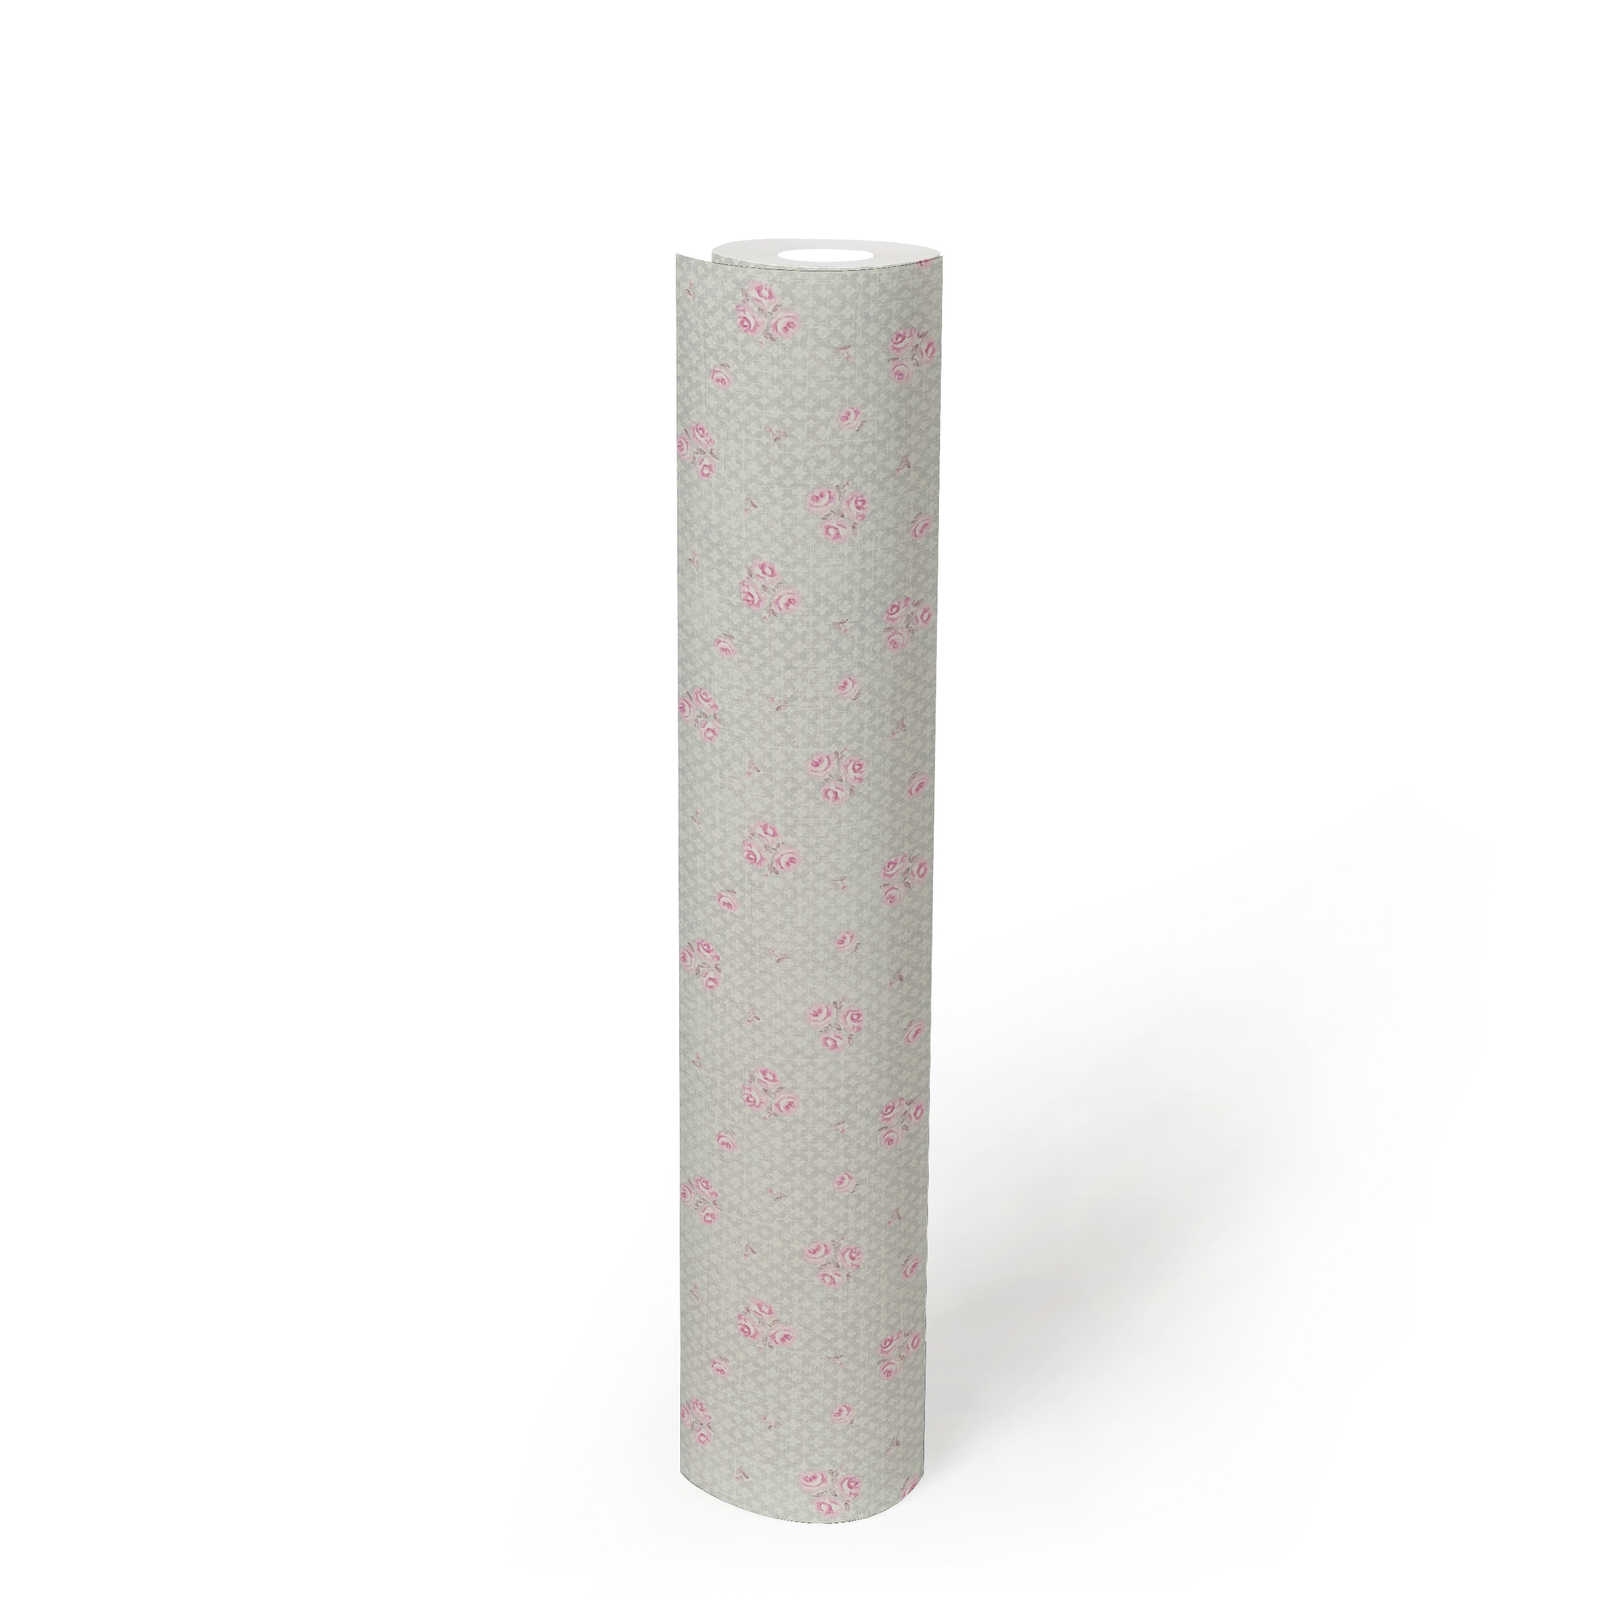             Papel pintado no tejido con motivos florales en estilo Shabby Chic - gris, rosa, blanco
        